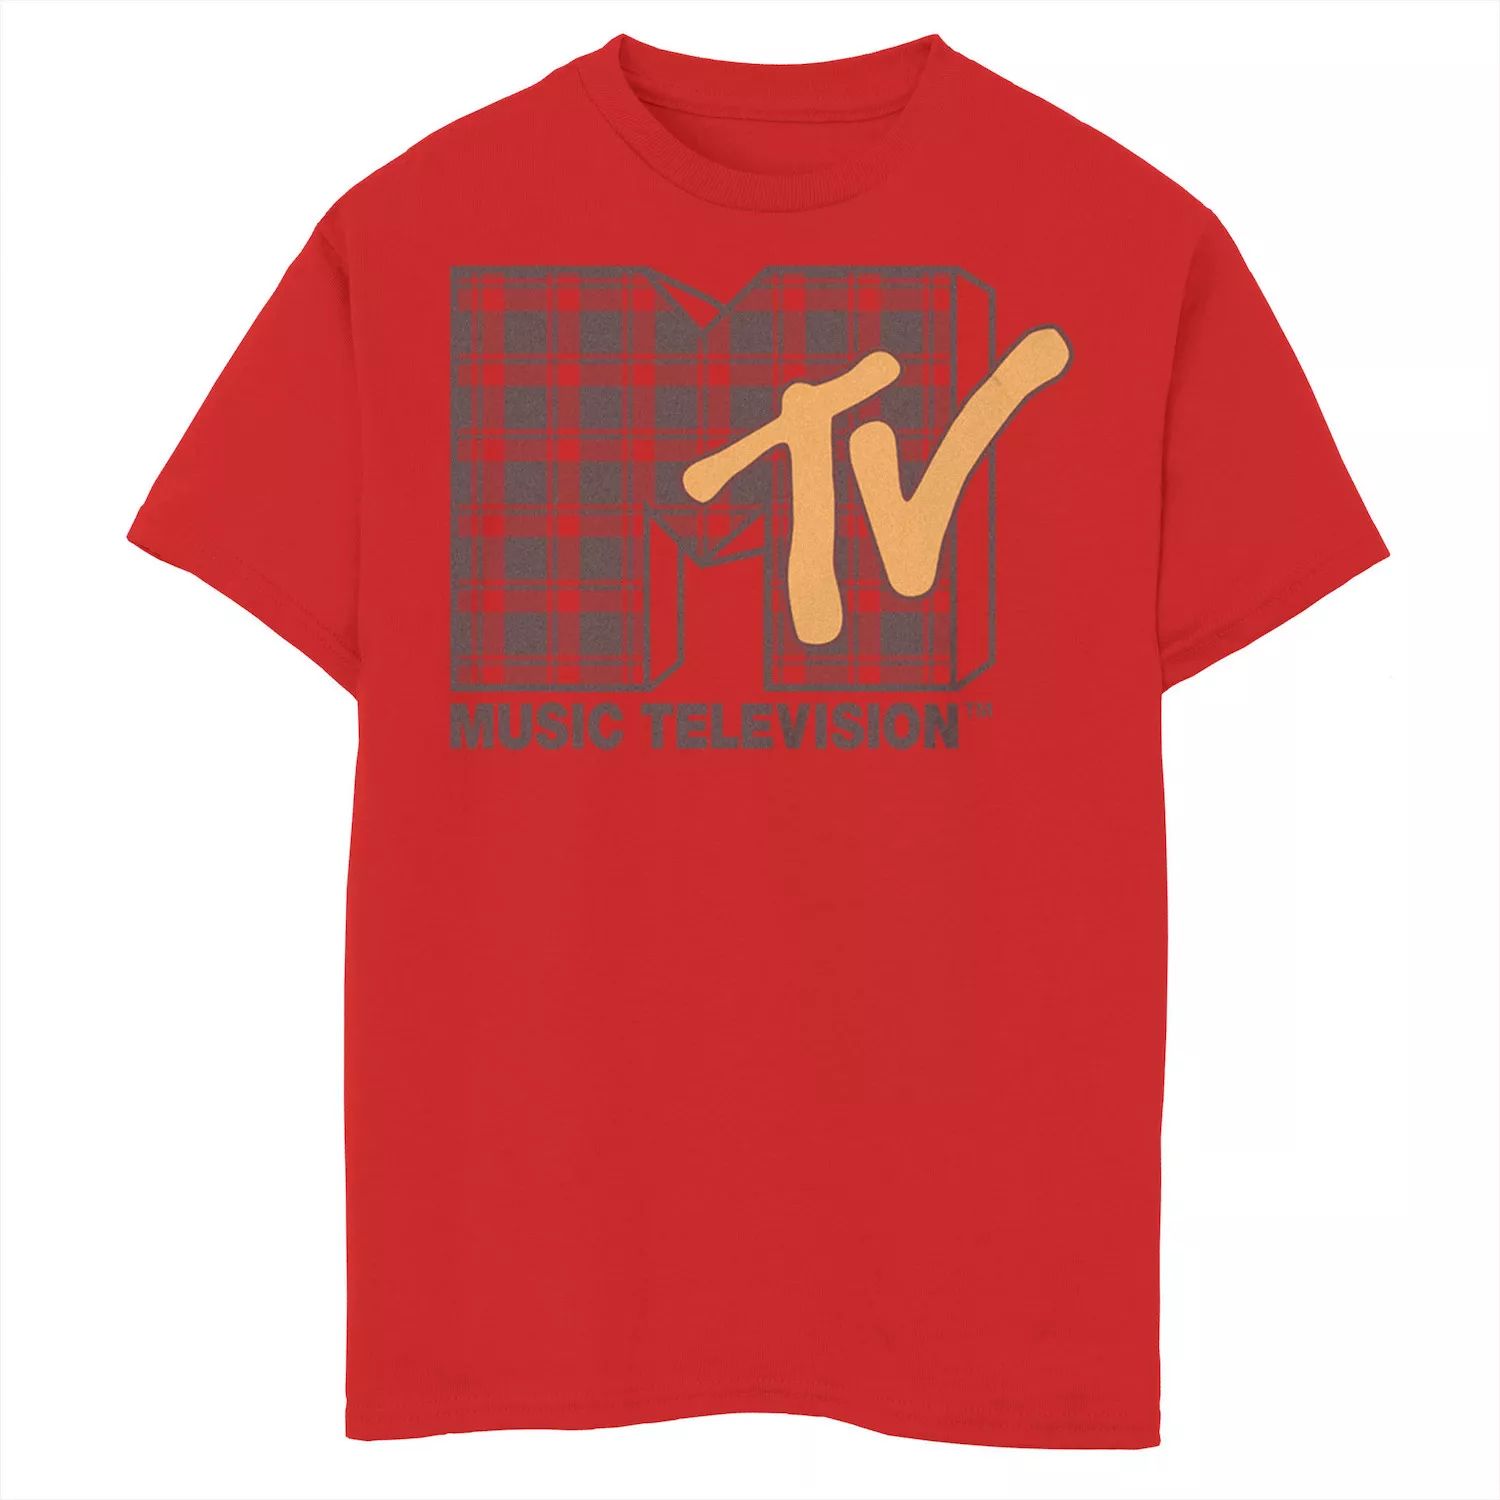 Клетчатая футболка MTV с логотипом MTV для мальчиков 8–20 лет Licensed Character футболка с логотипом mtv i want my mtv est 1981 для мальчиков 8–20 лет licensed character